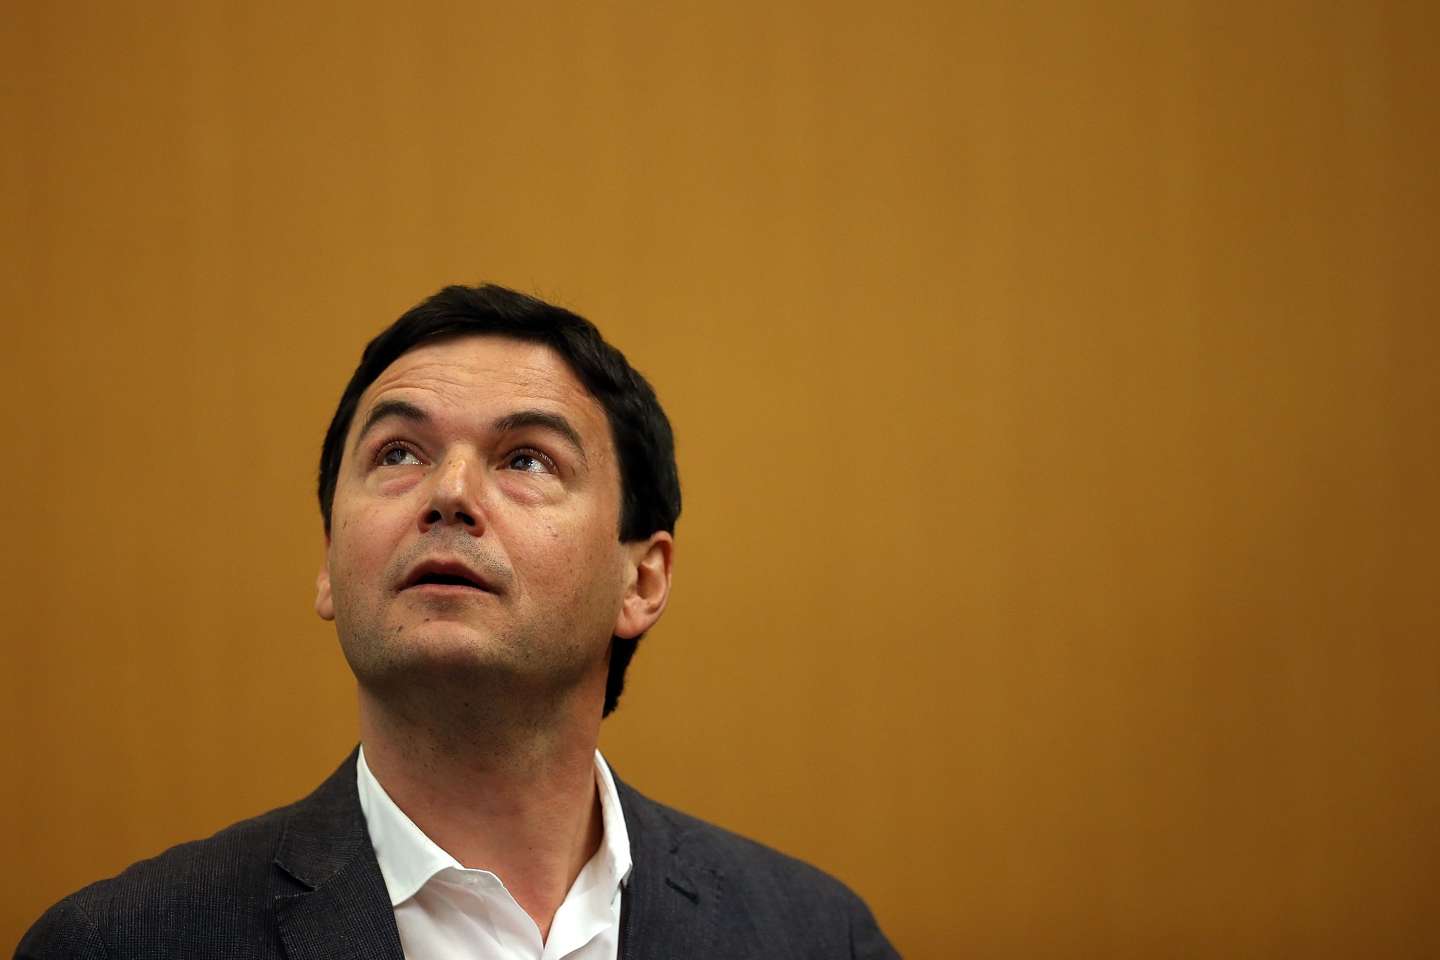 Thomas Piketty définitivement condamné pour diffamation envers Aurélie Filippetti